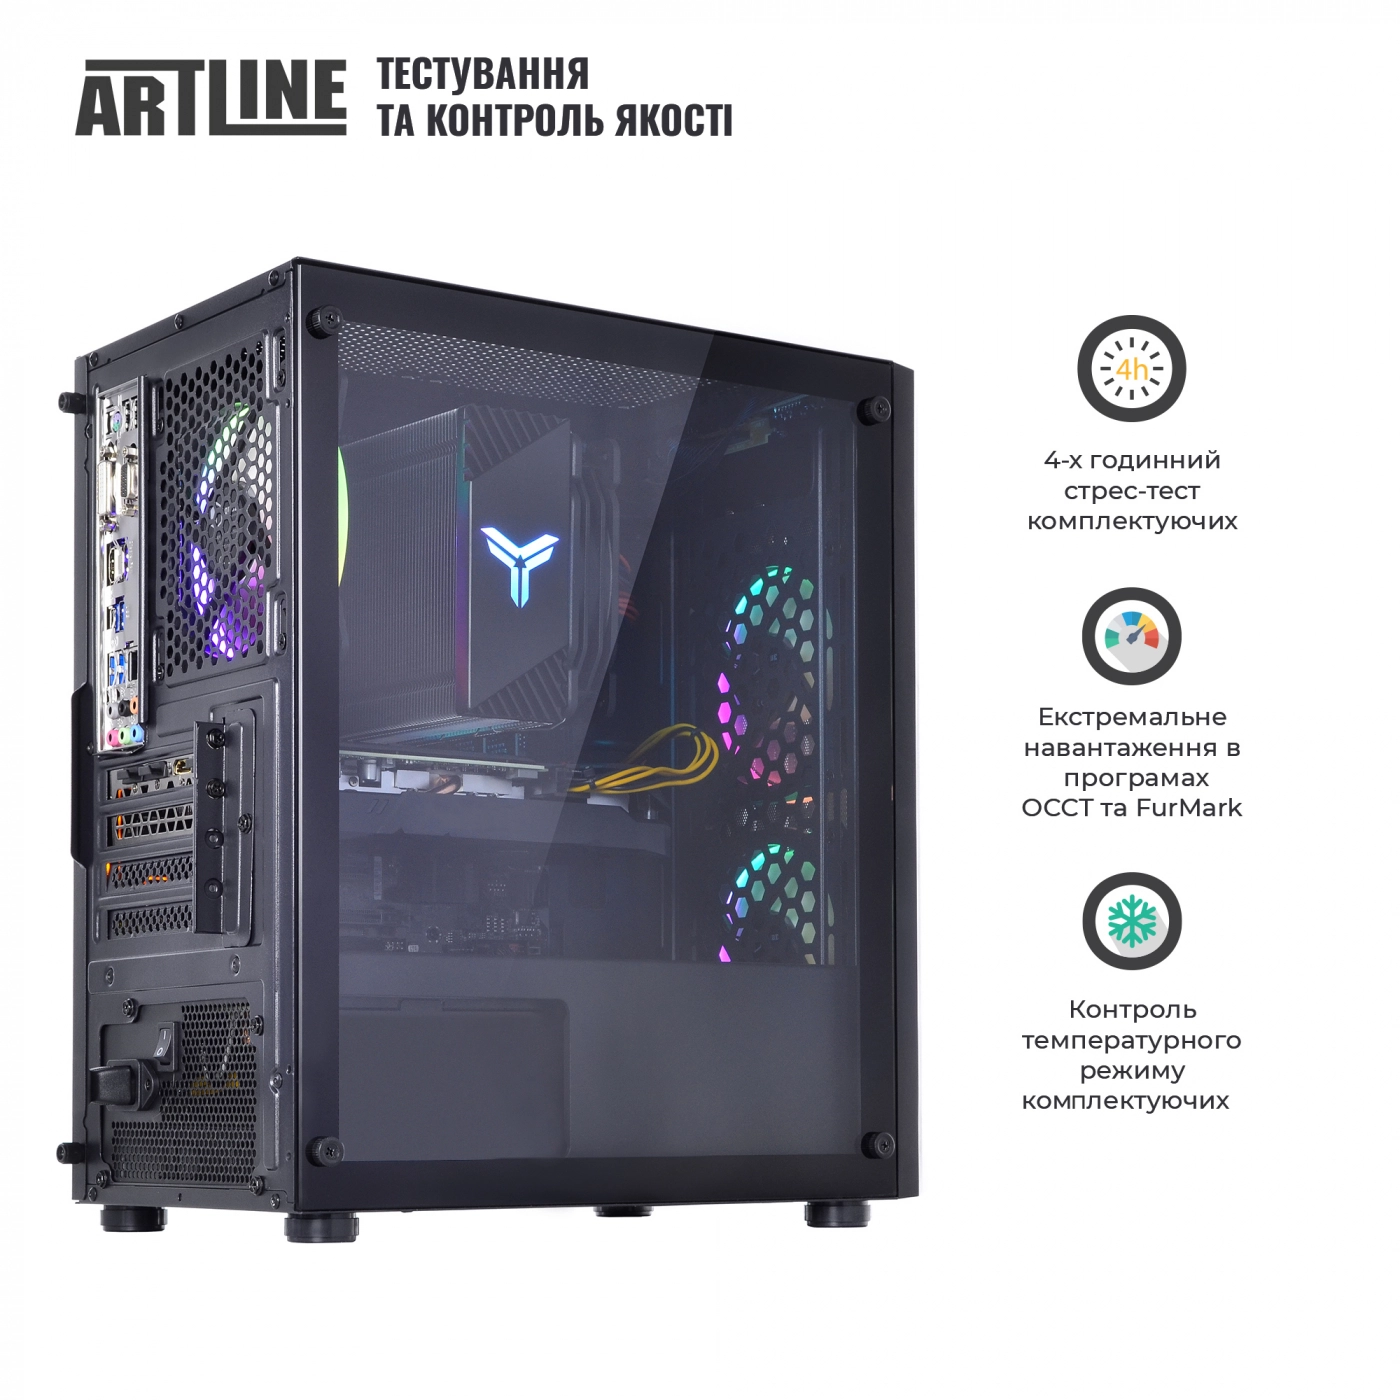 Купить Компьютер ARTLINE Gaming X71v53 - фото 9